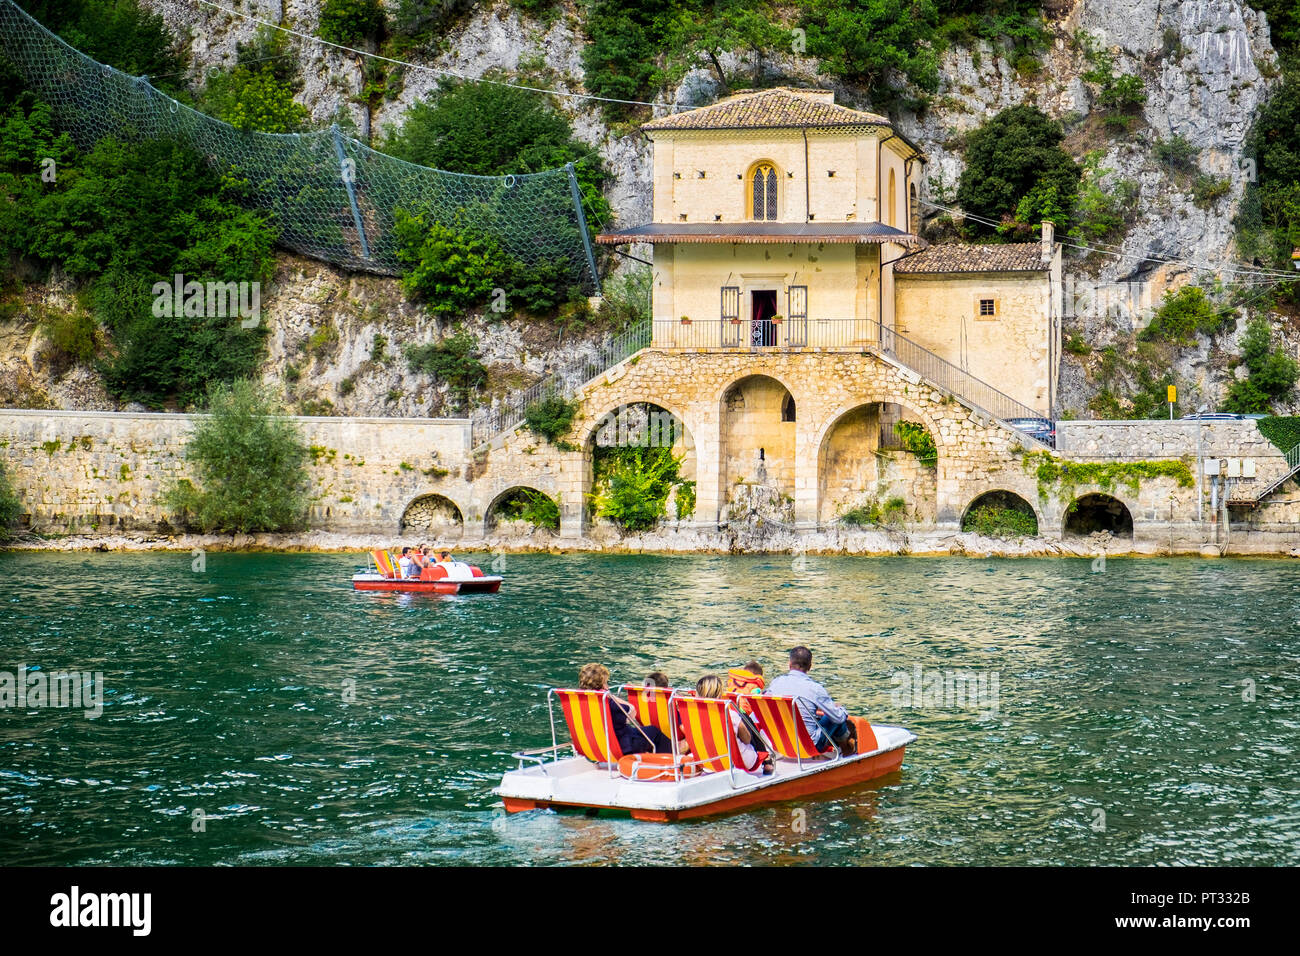 Lago de Scanno, Scanno, Abruzzo, Italia, Europa Central, los turistas en un hidropedal cerca de la pequeña iglesia de la Madonna del Lago, Foto de stock